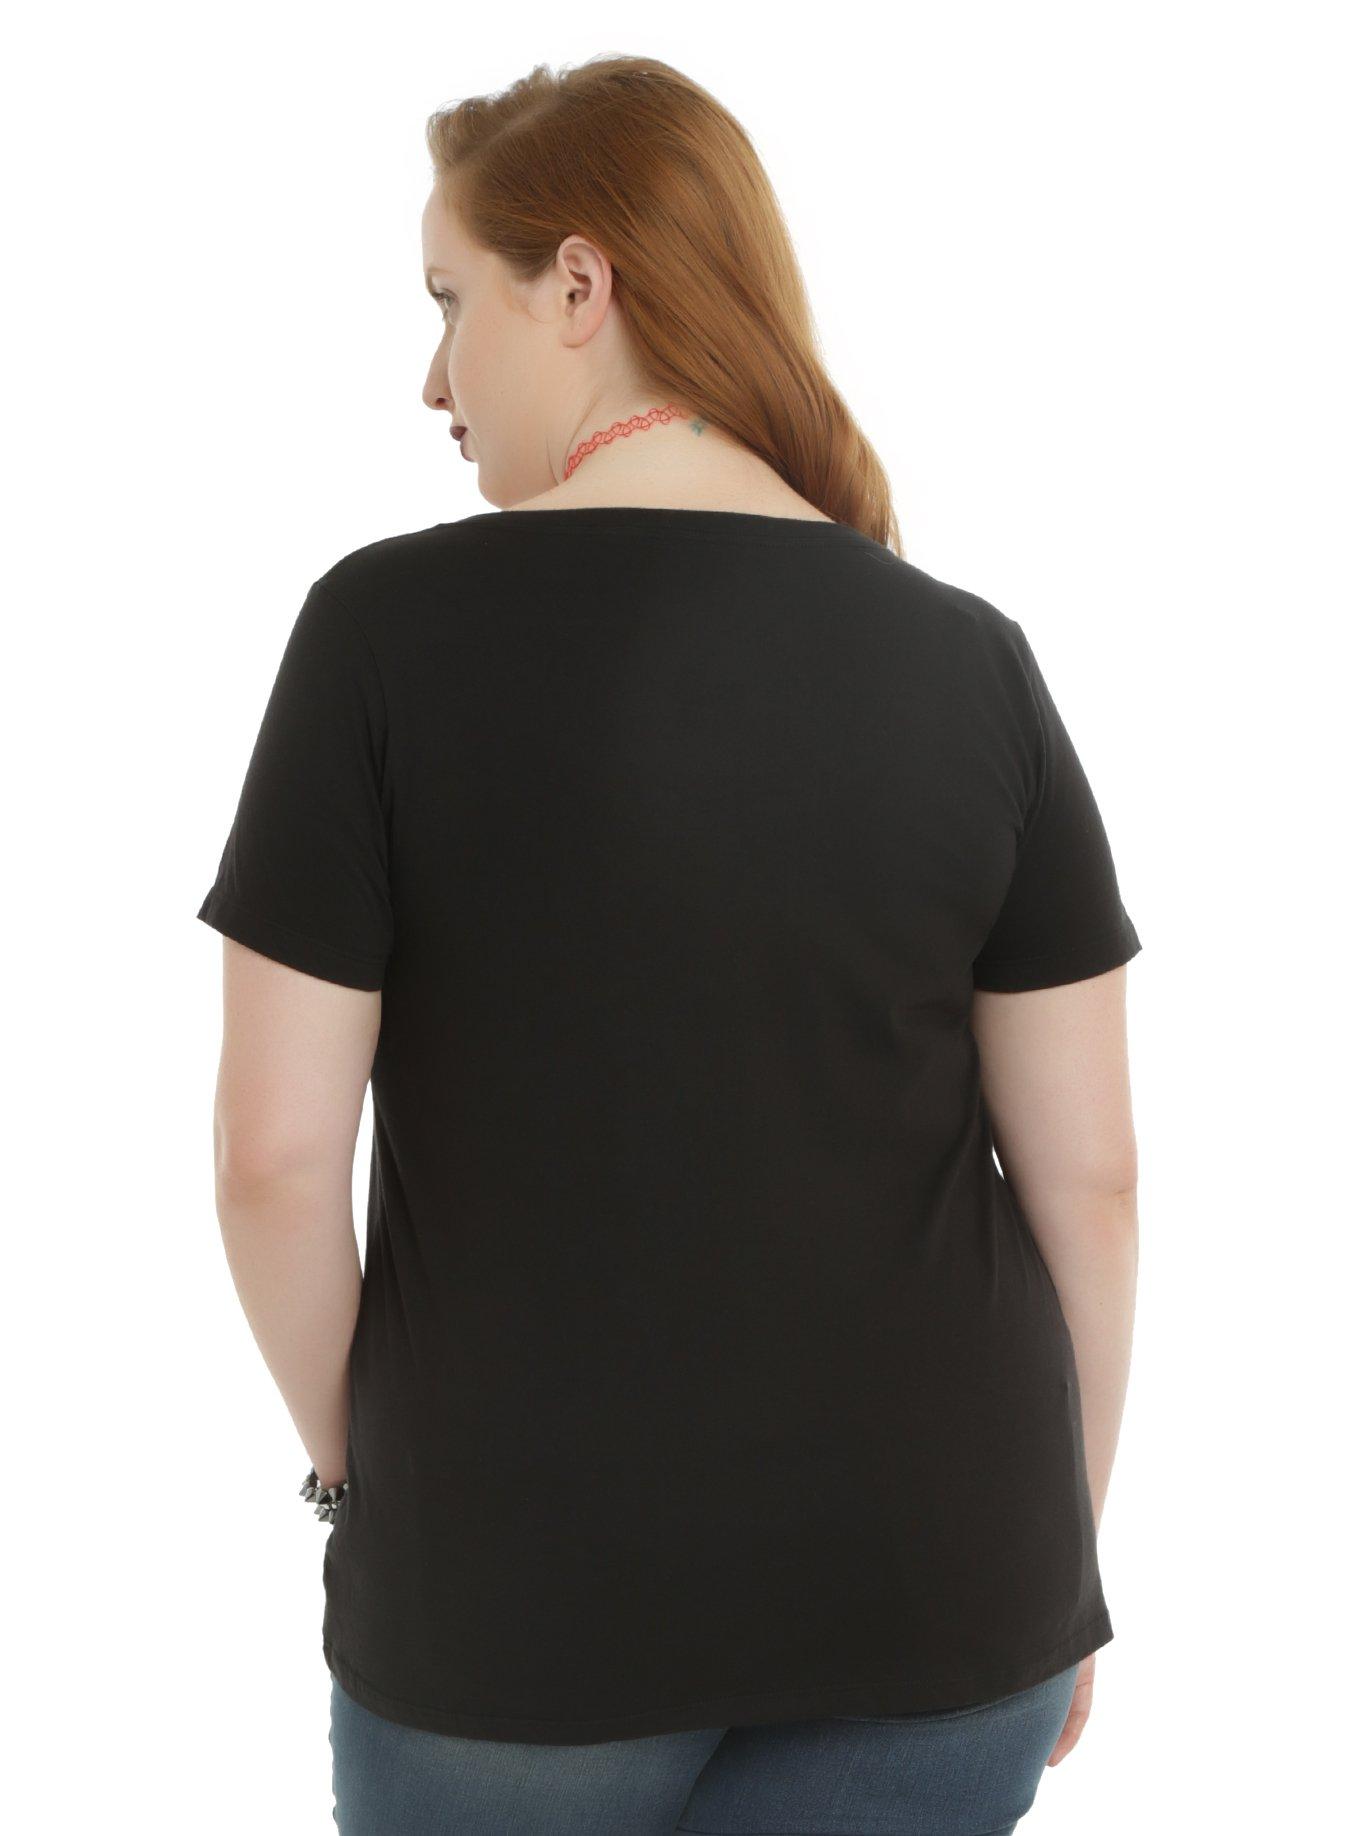 Black Butler Chibi Group Girls T-Shirt Plus Size, , alternate